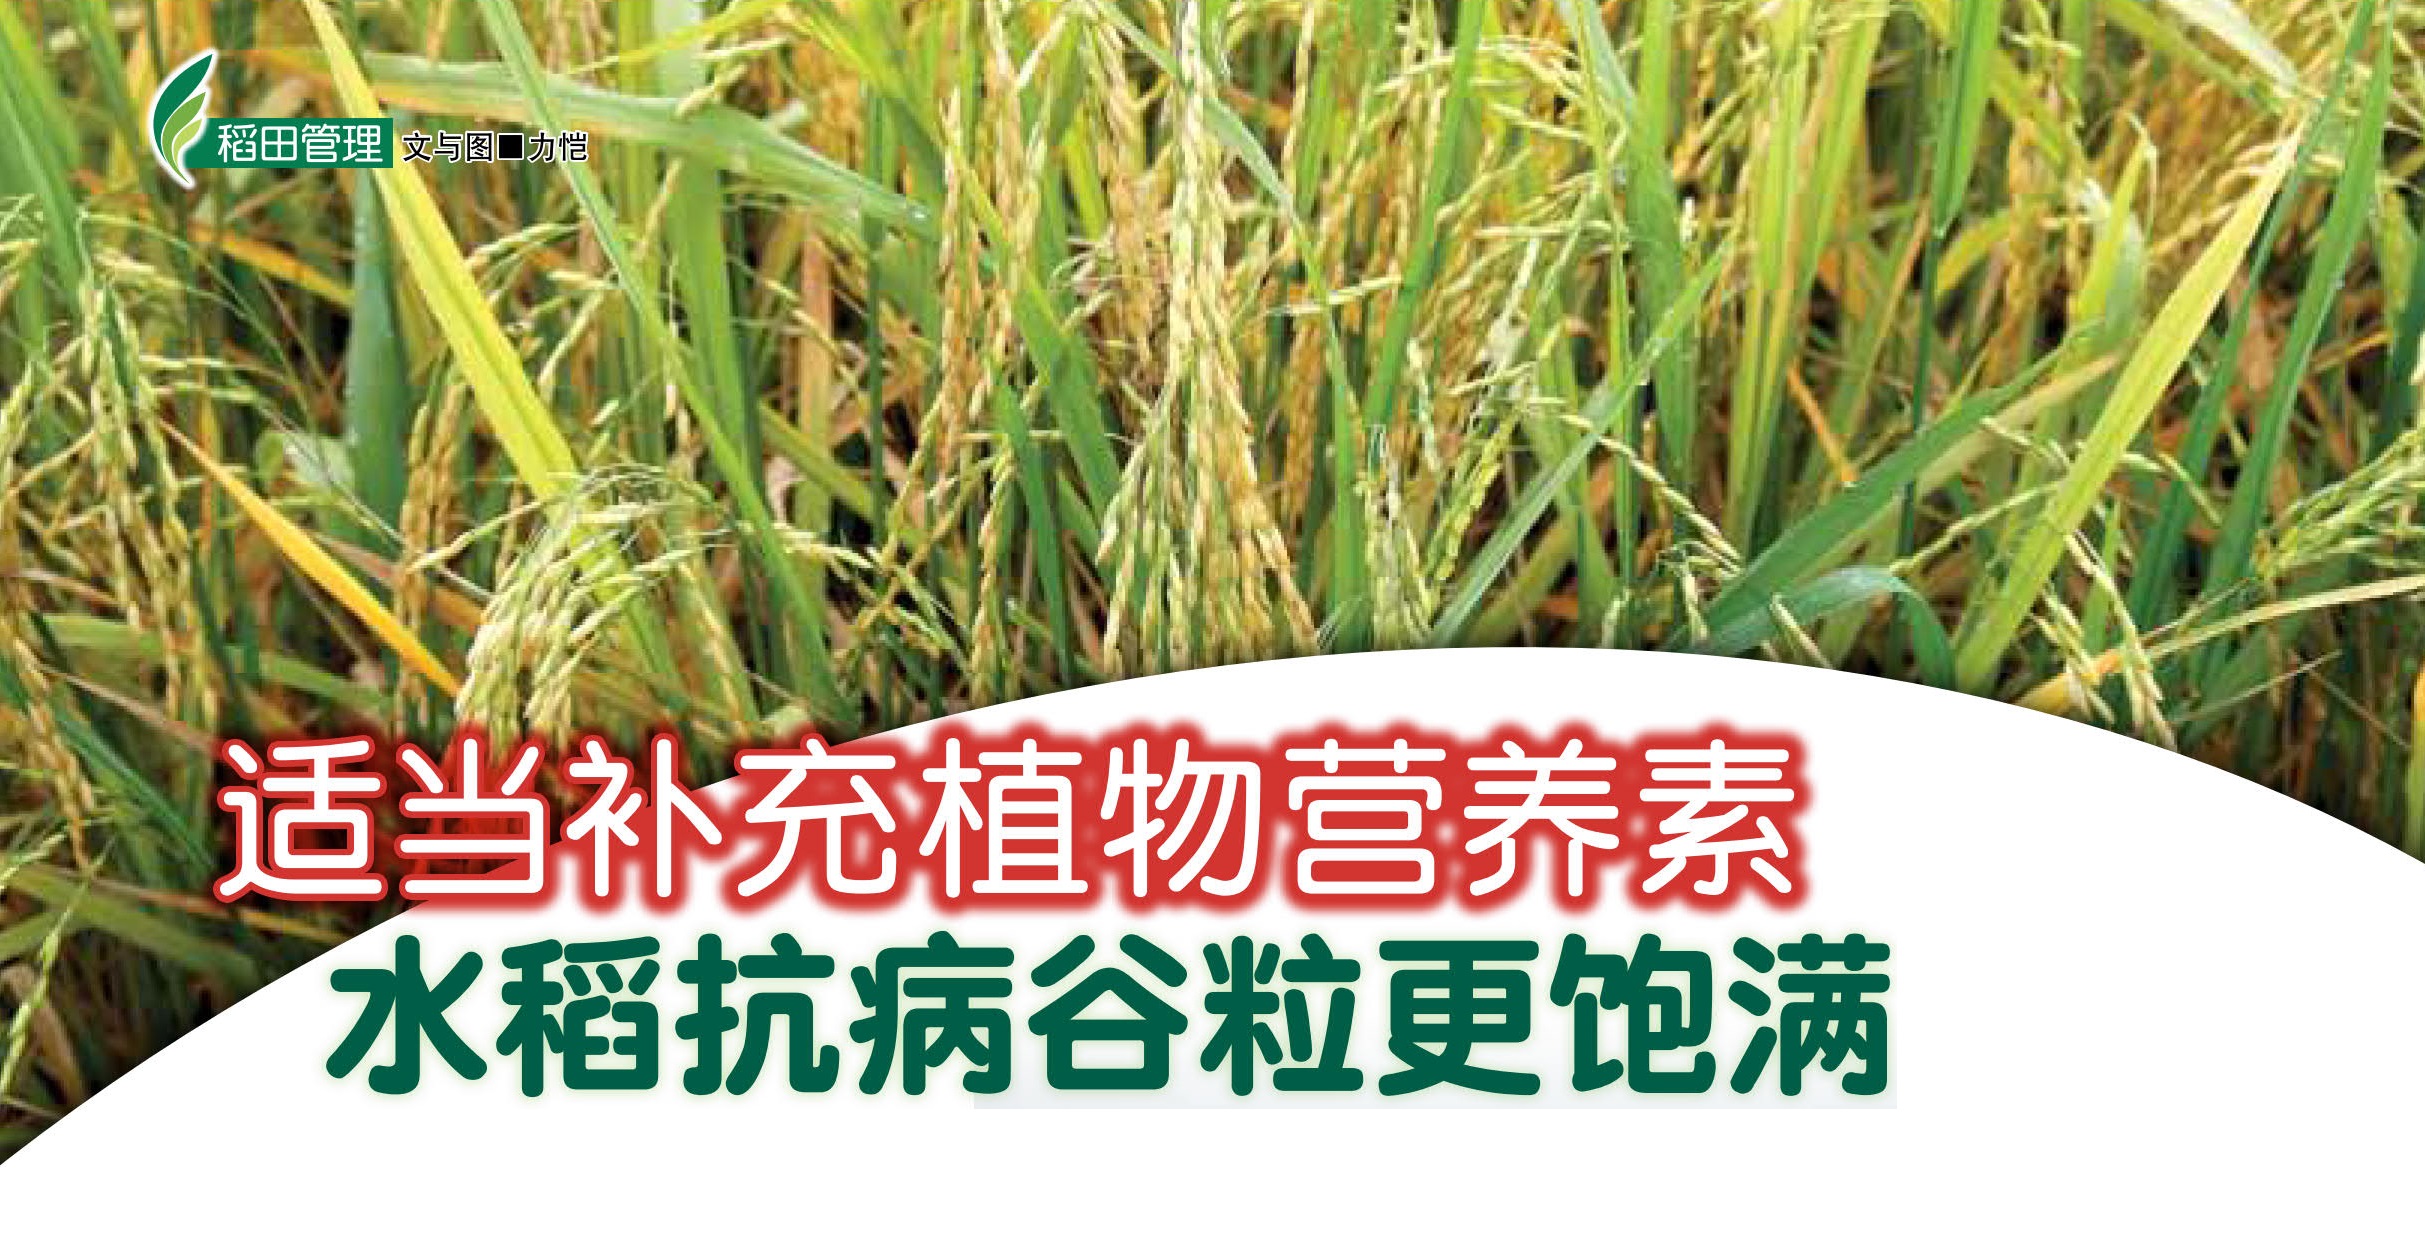 适当补充植物营养素水稻抗病谷粒更饱满 - 农牧世界